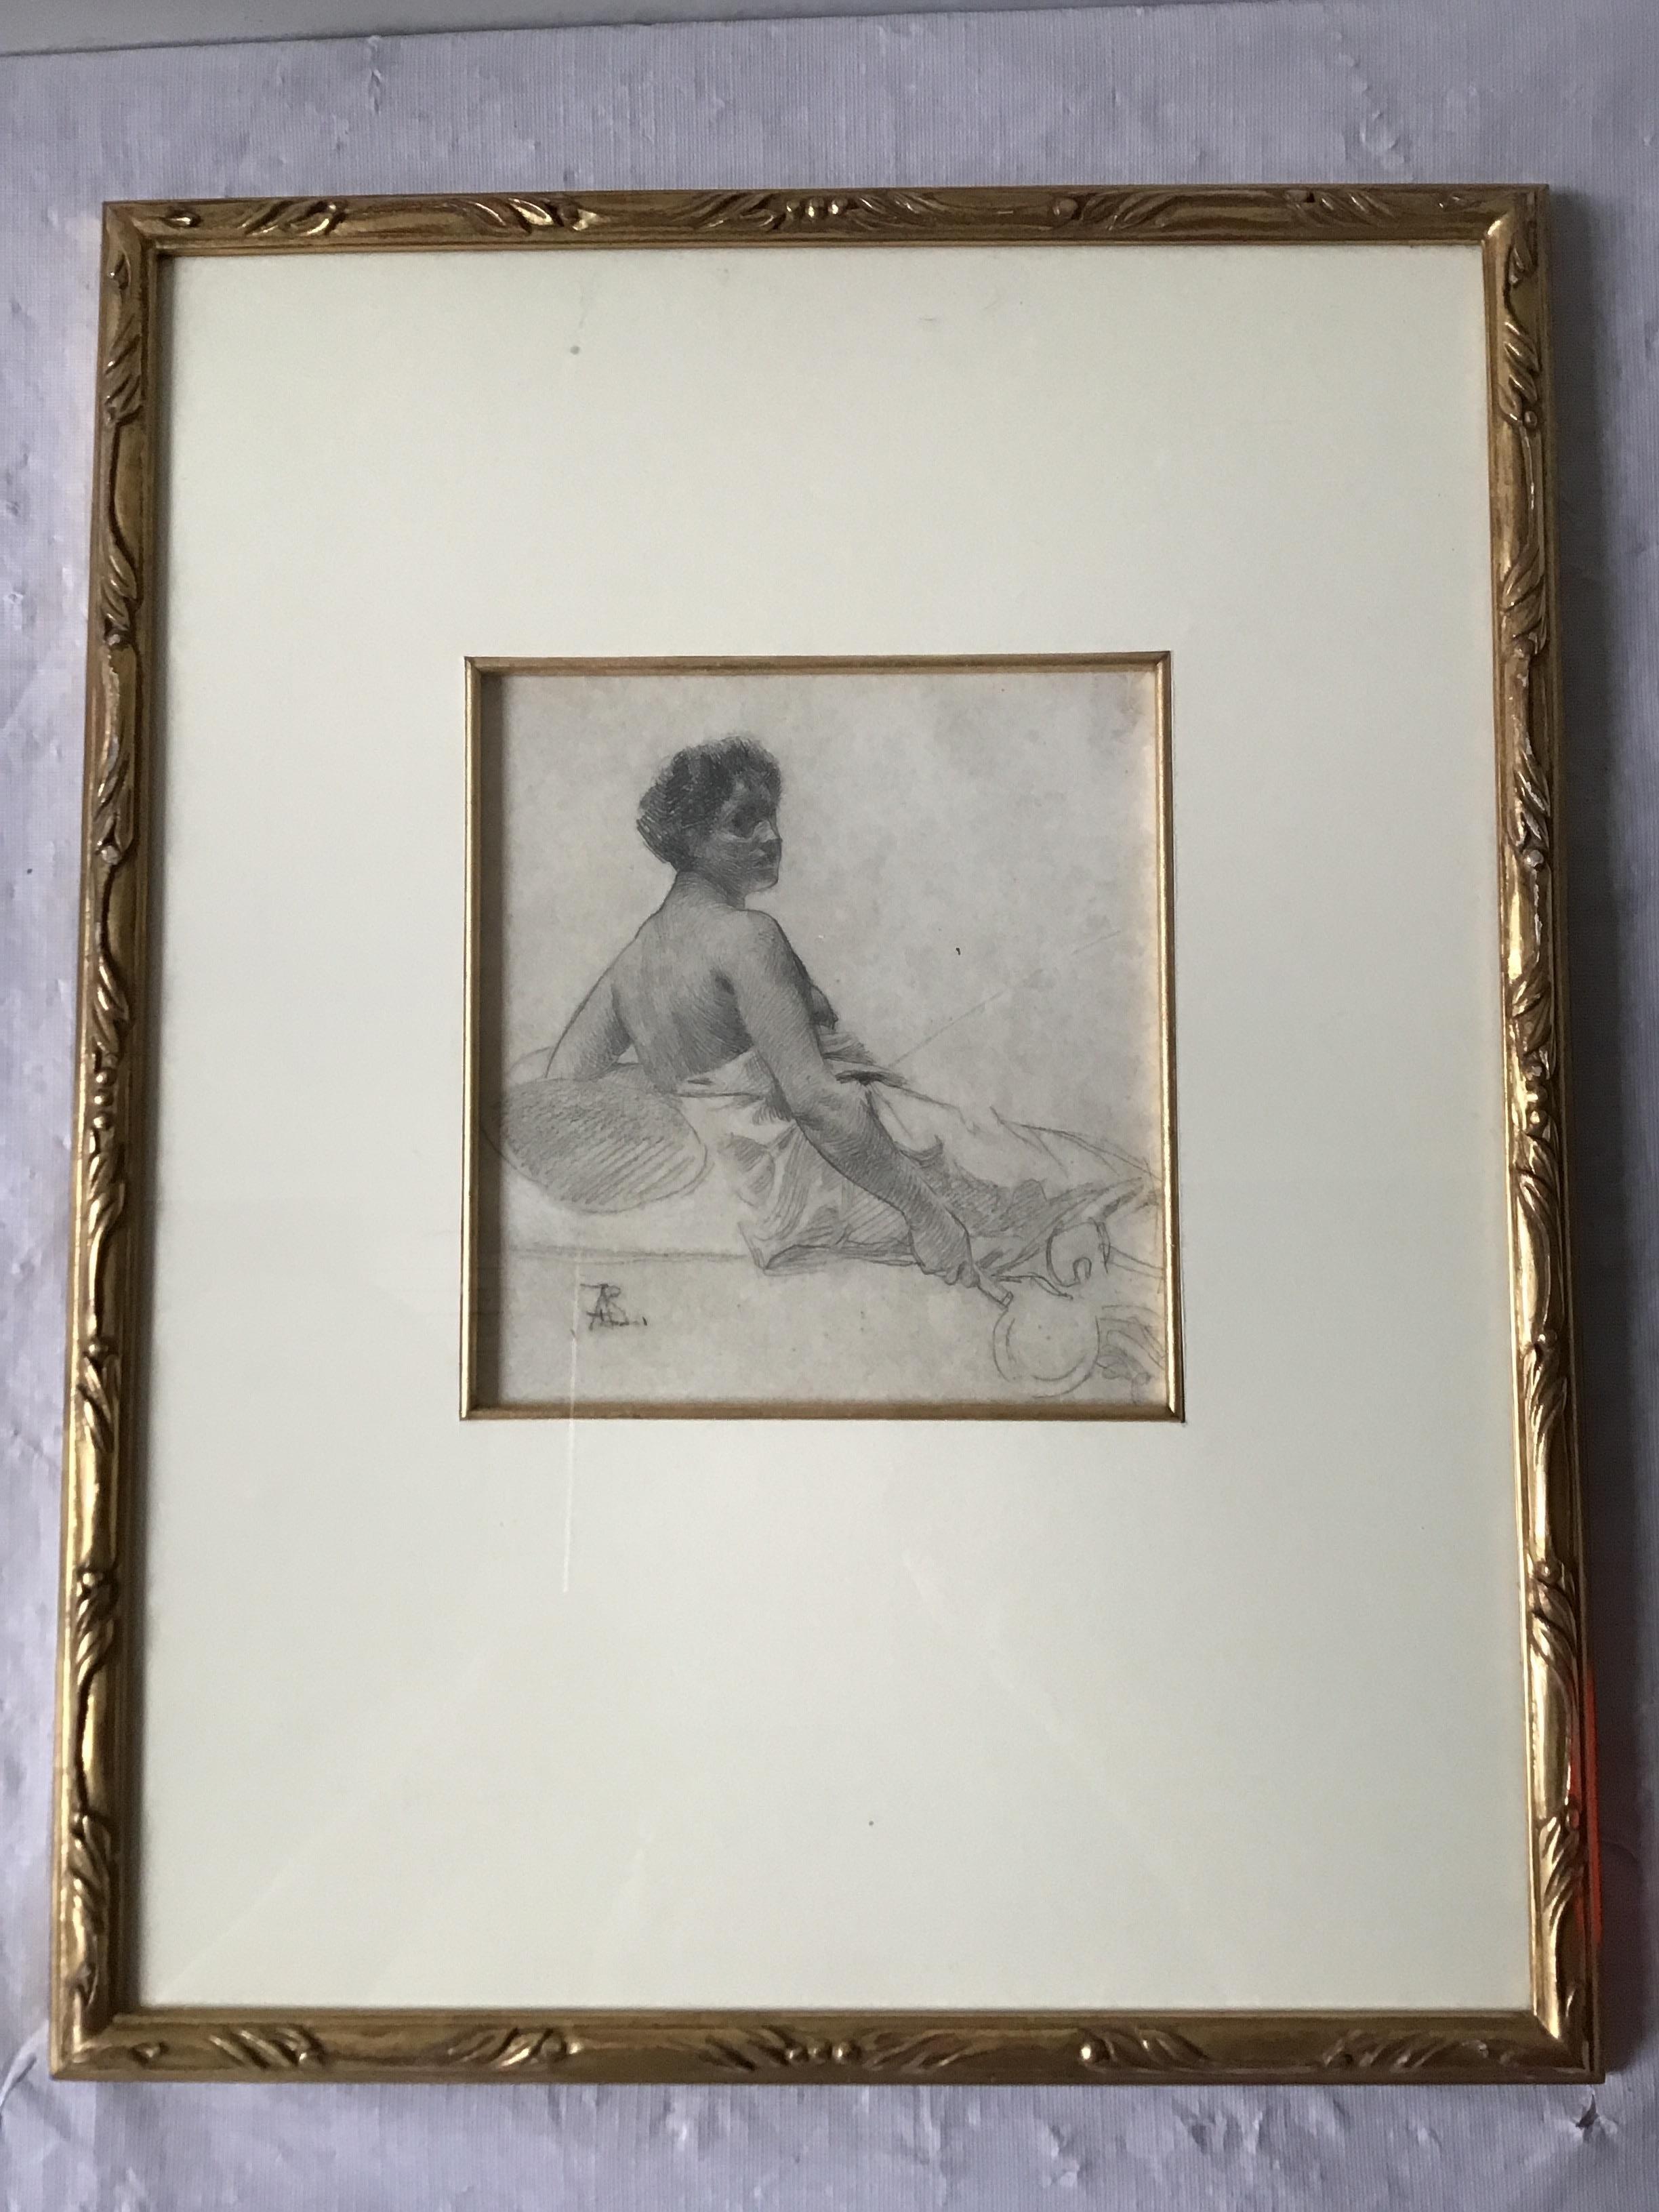 Paul Albert Besnard, Bleistiftzeichnung einer sitzenden Frau aus den 1880er Jahren. In einem vergoldeten Rahmen. Aus dem Anwesen eines Prominenten in Southampton, NY, direkt am Meer.